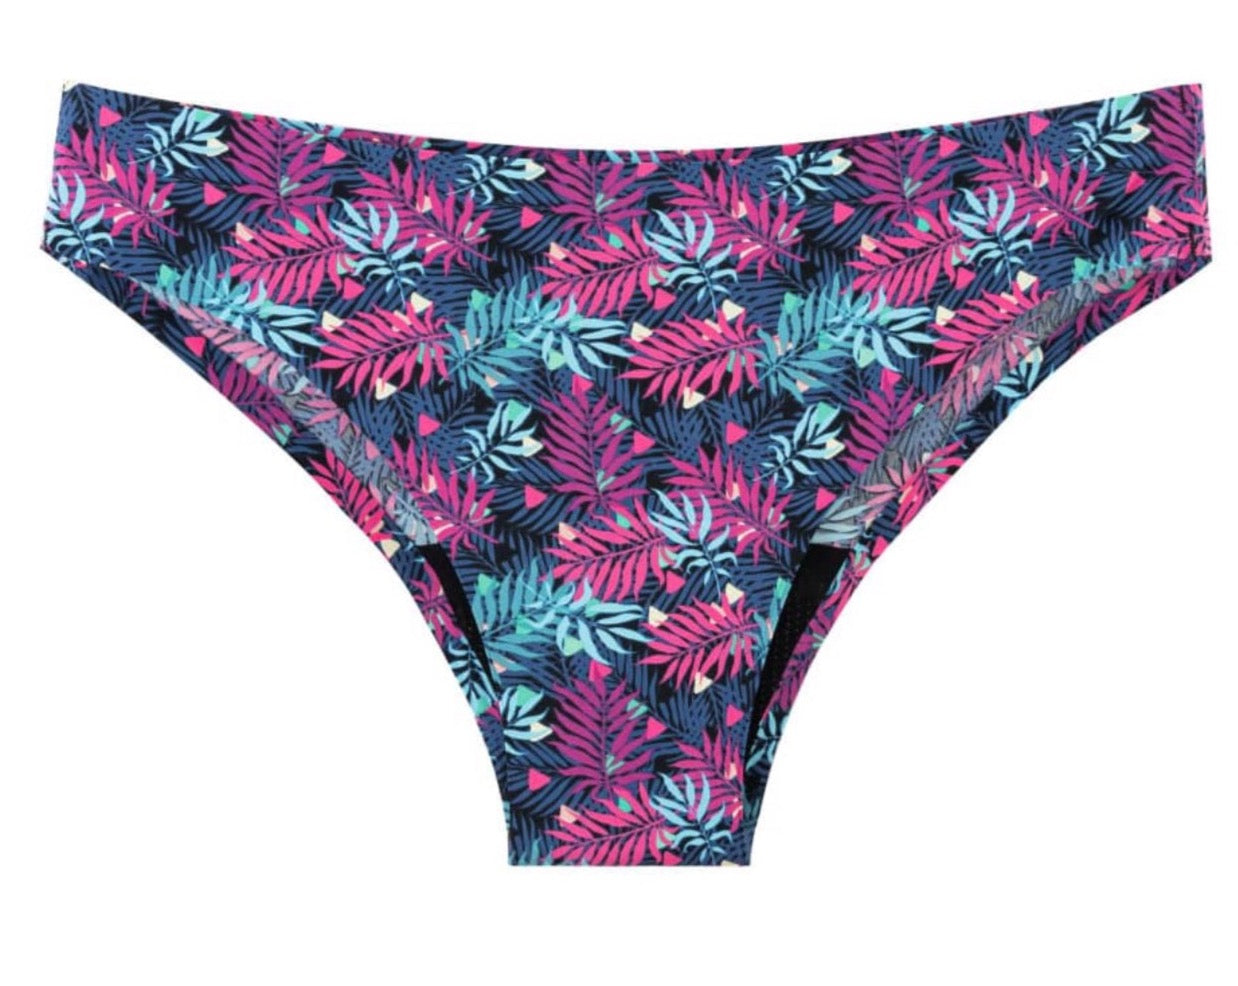 Ladies Hipster Seamless Period Underwear 2 pack – MyNickerBot